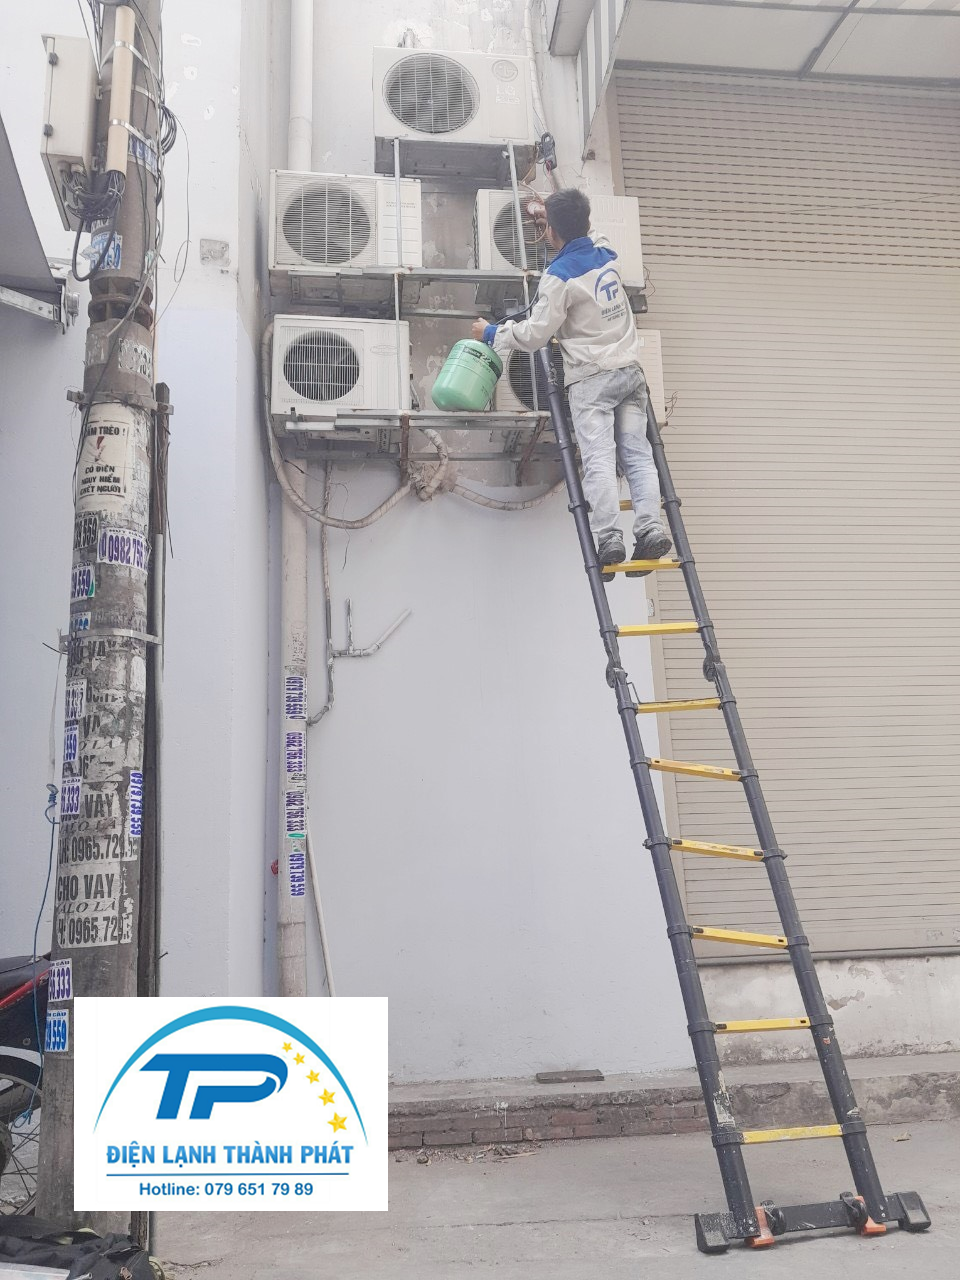 Dịch vụ vệ sinh máy lạnh của Thành Phát có bảo hành hợp lý.